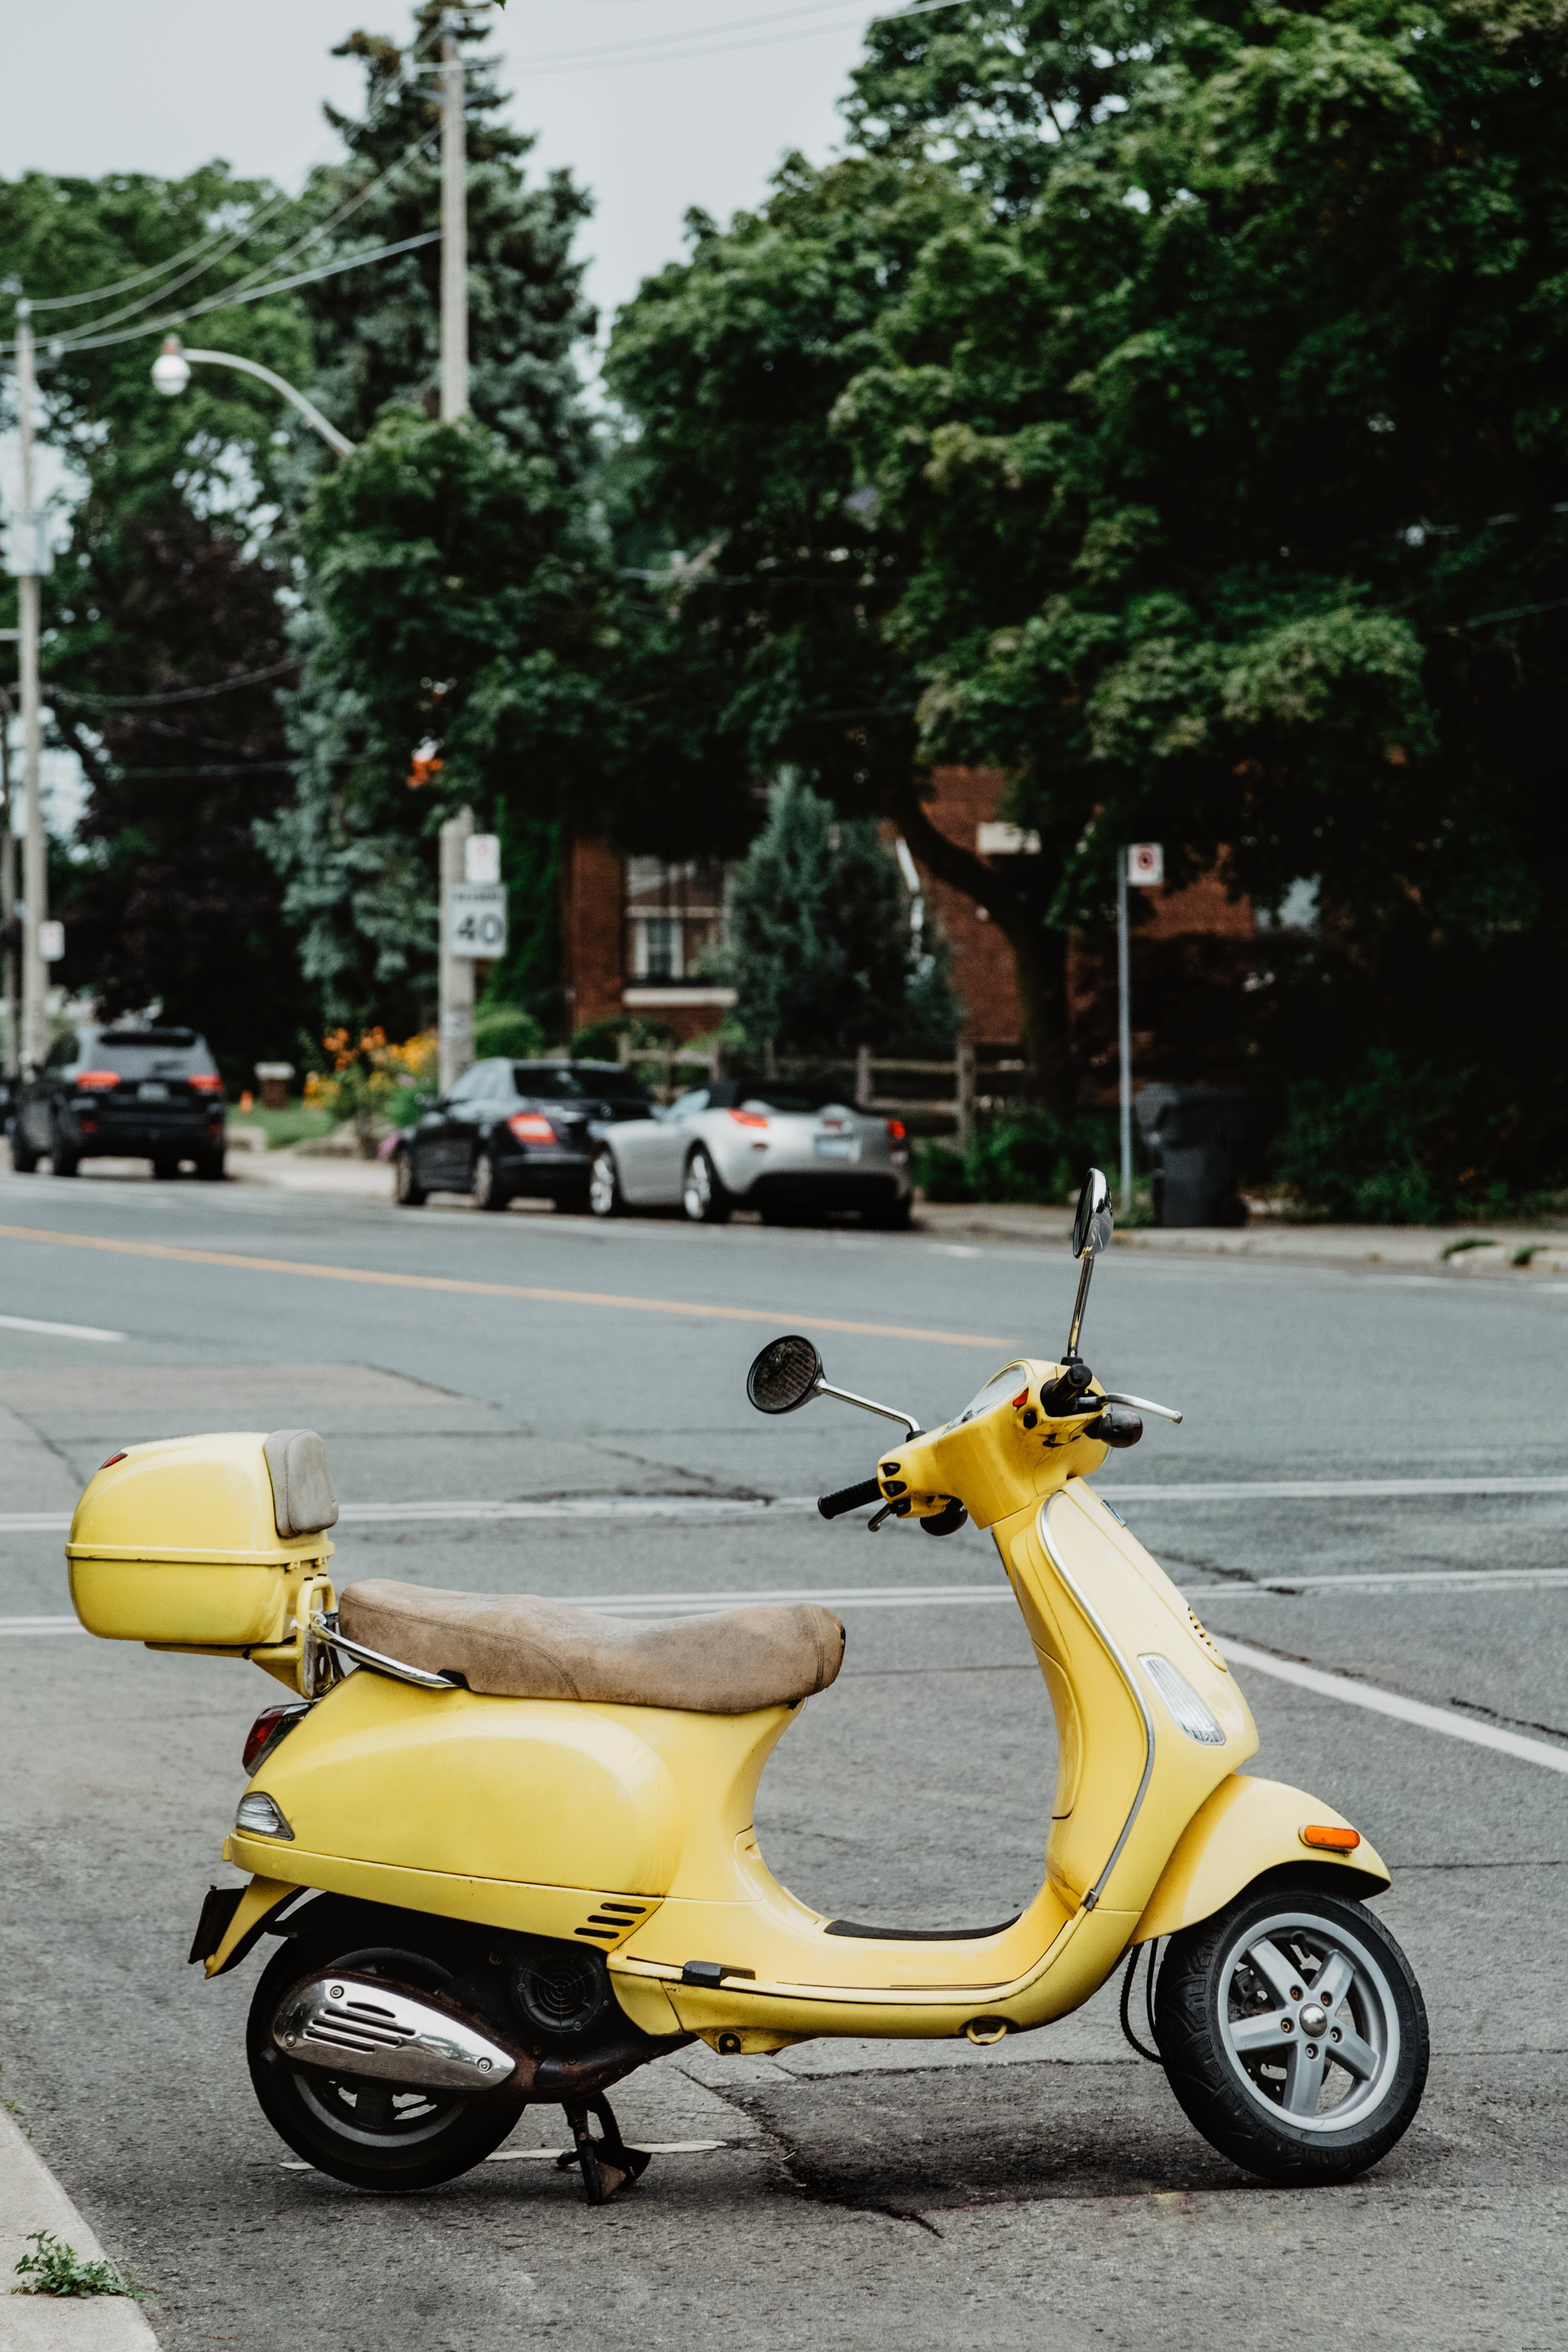 Un ciclomotor amarillo veraniego italiano estacionado en una foto de la calle